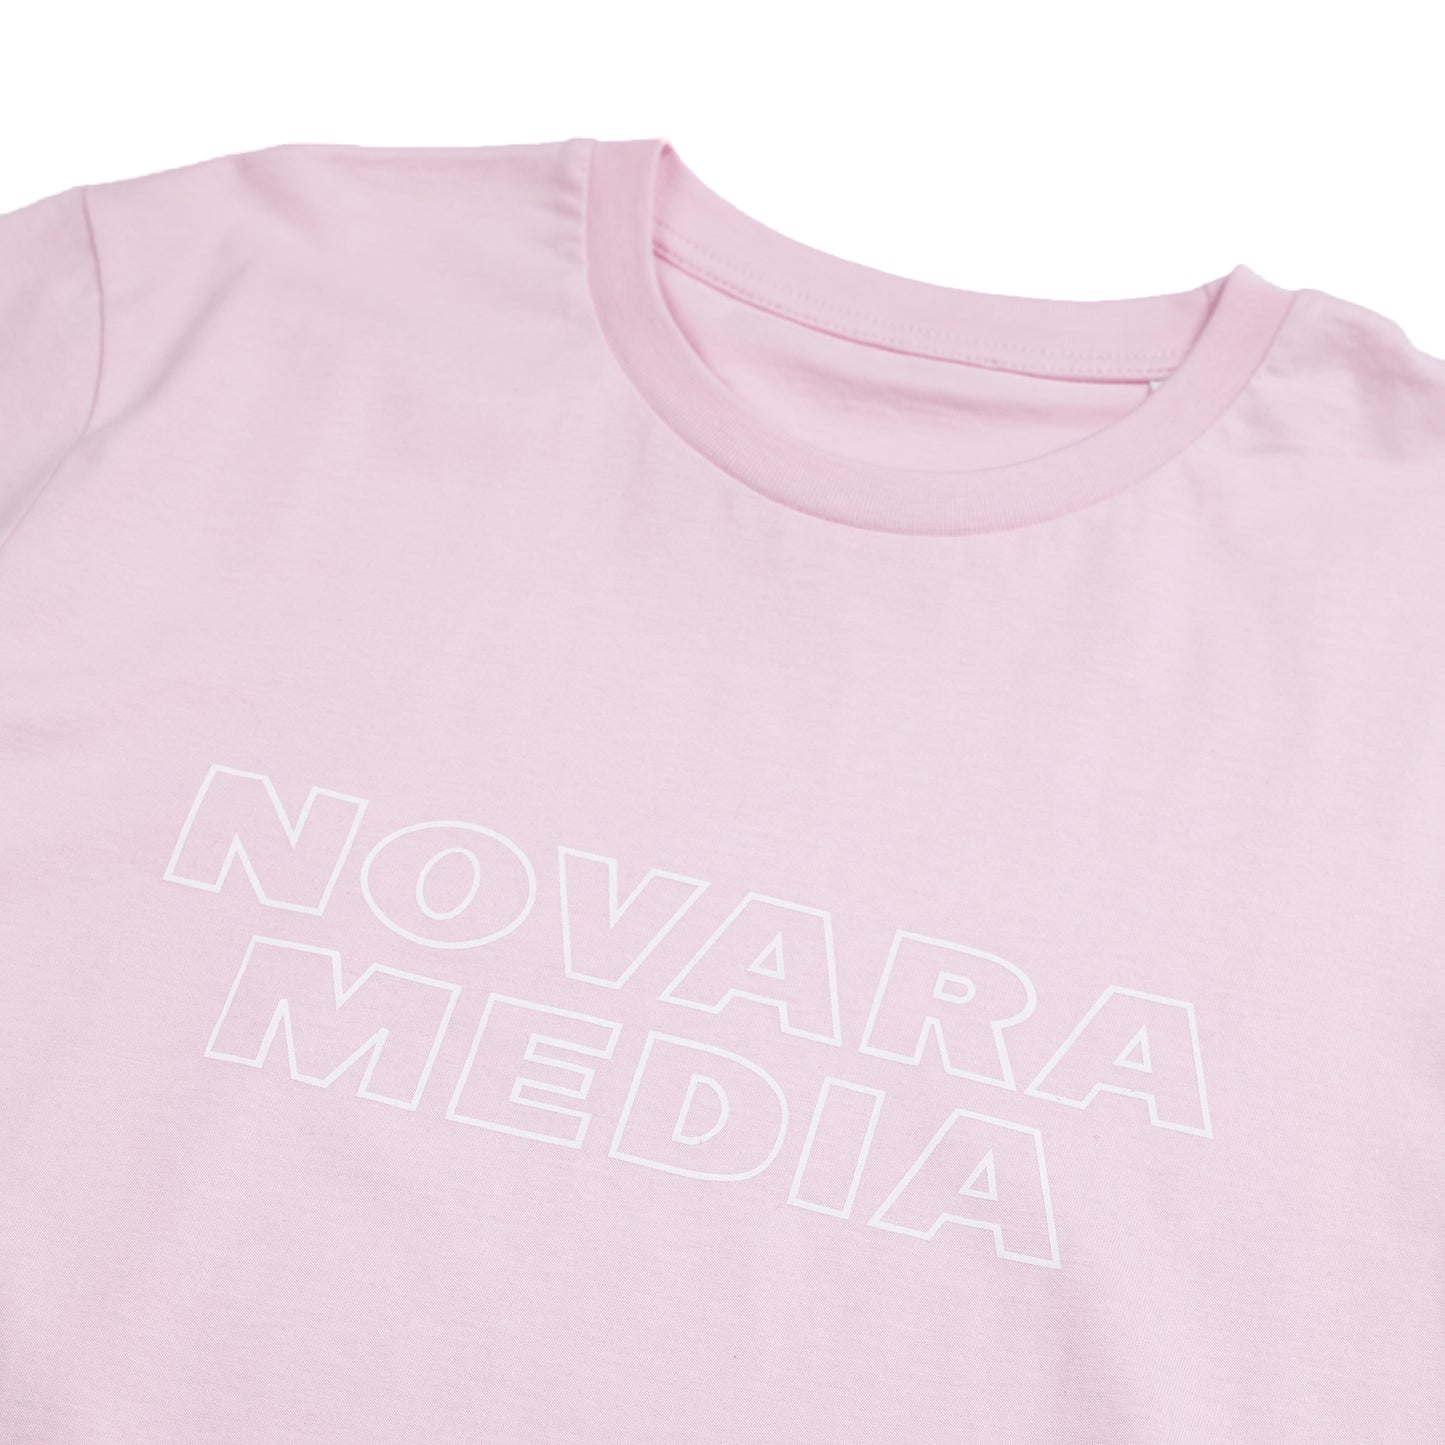 Novara Media Short Sleeve Pink